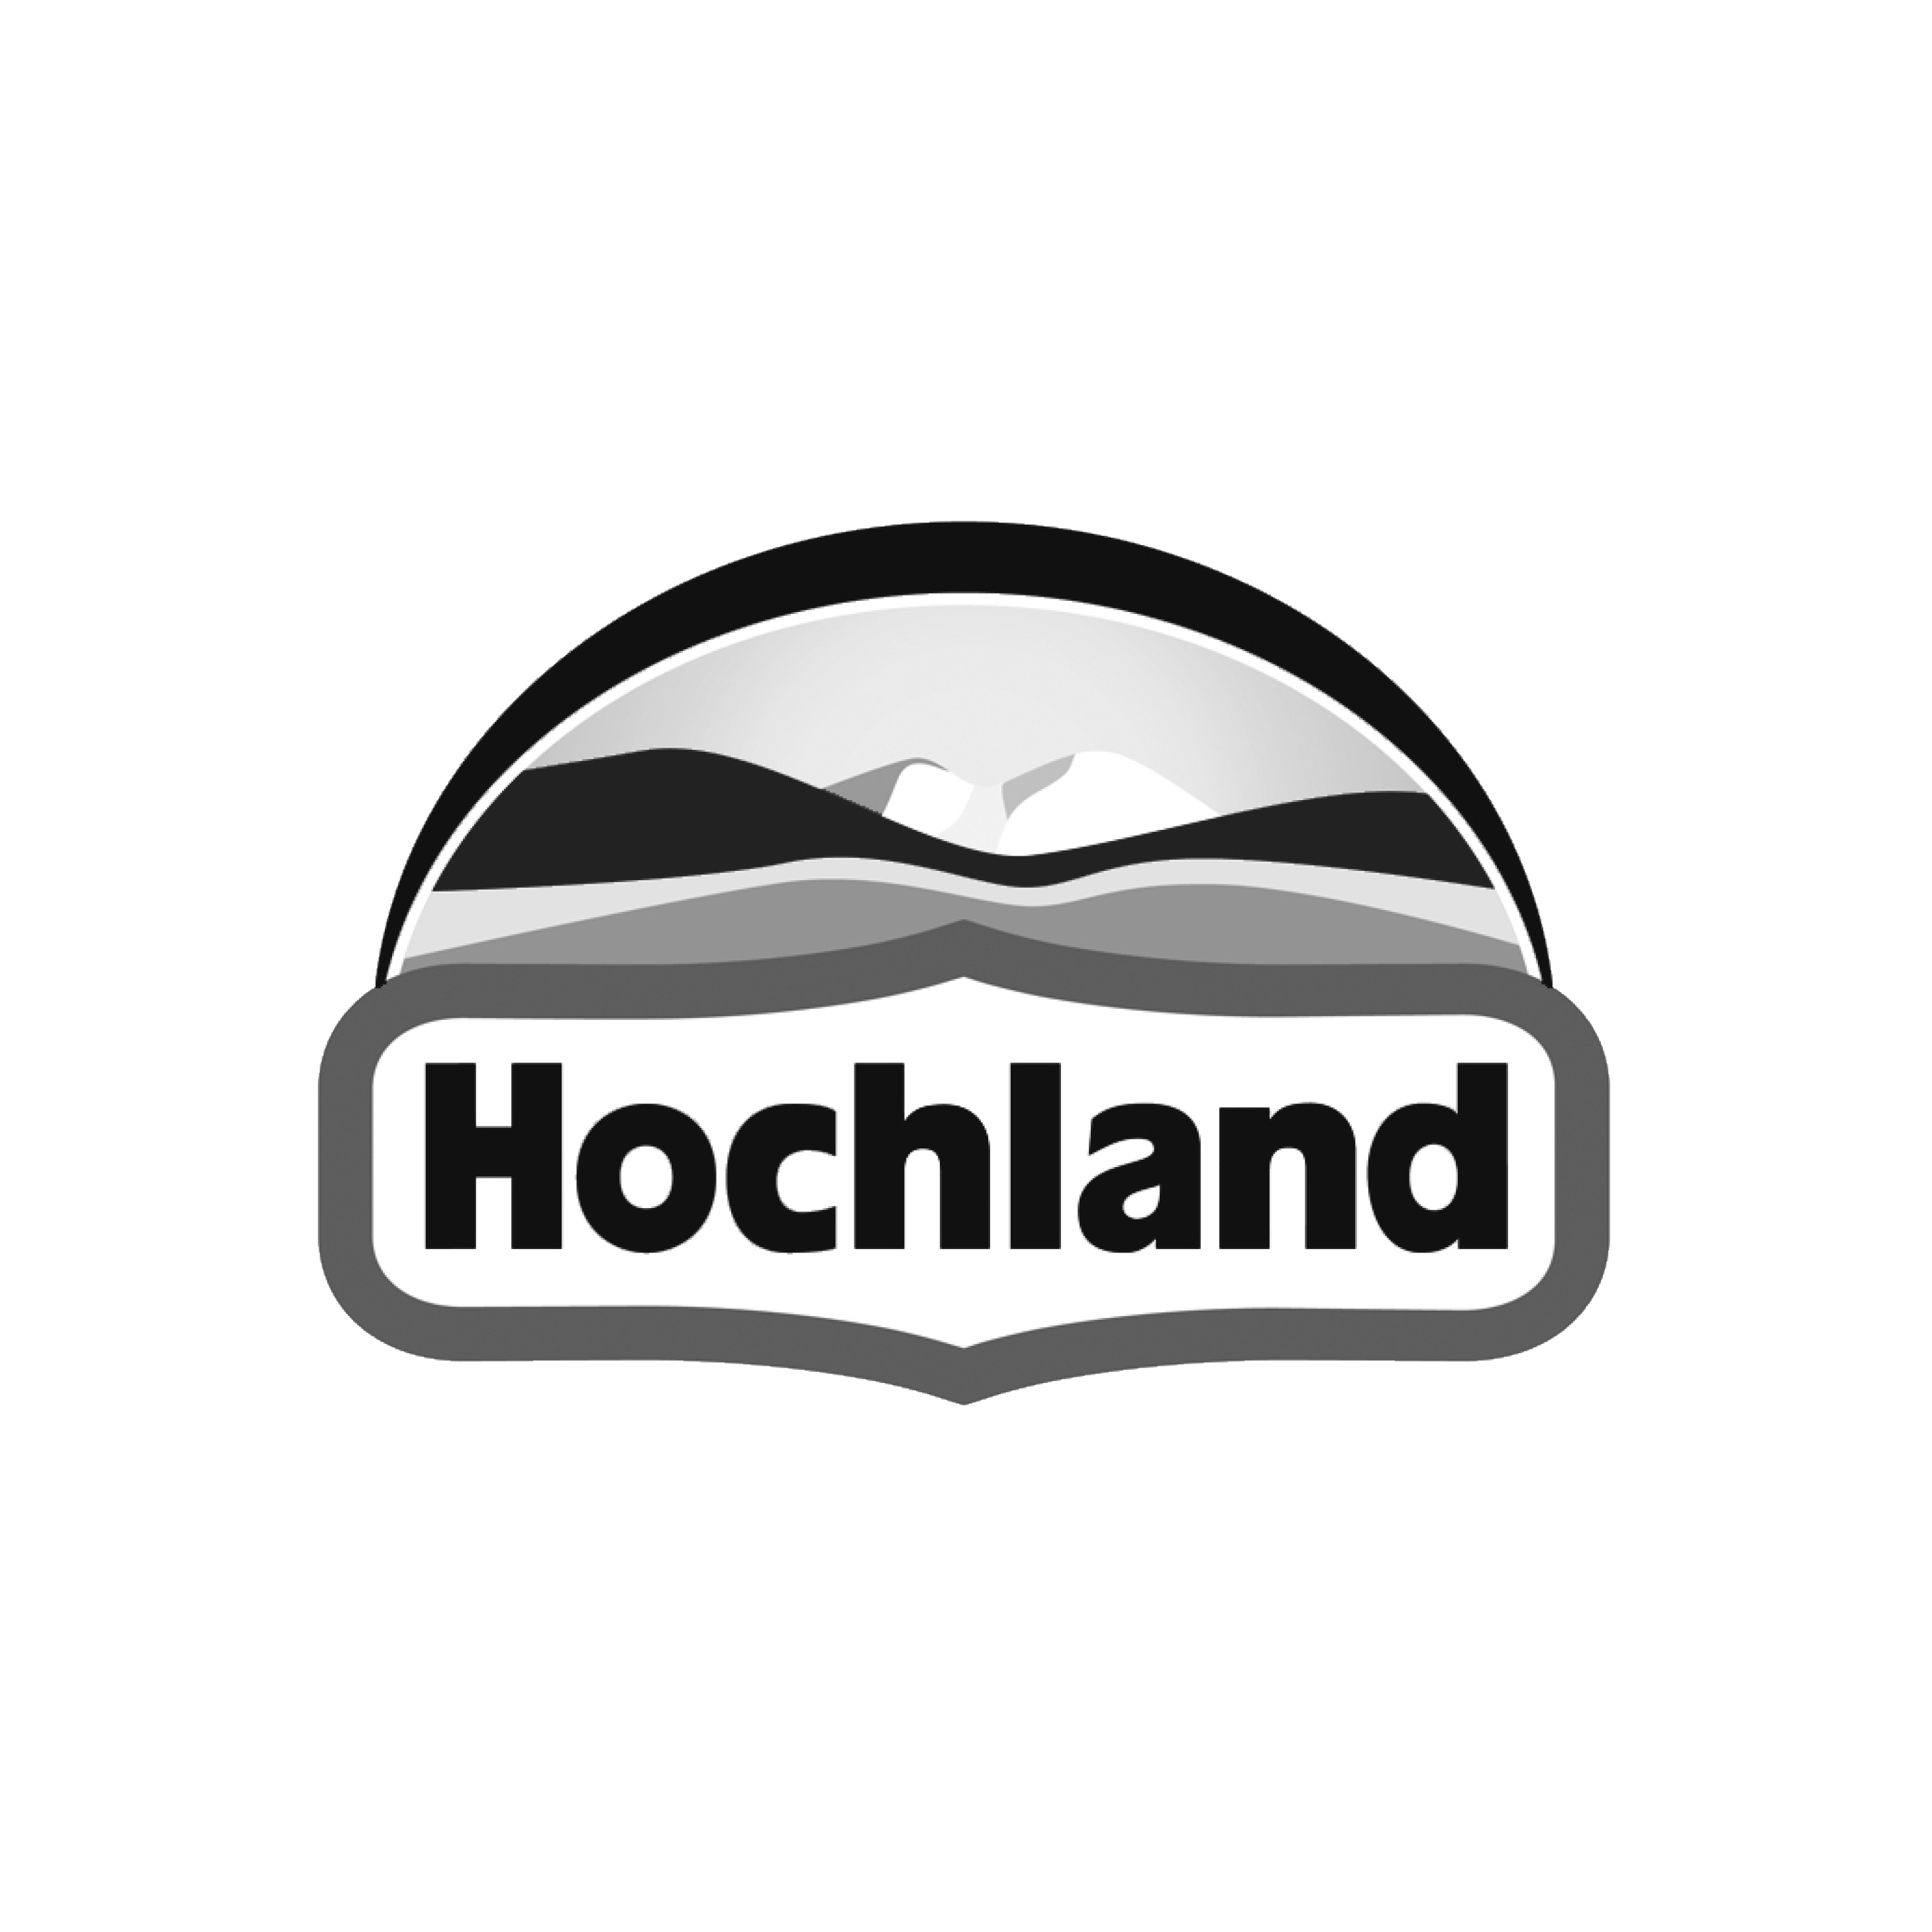 Hochland_Kundenlogo202112